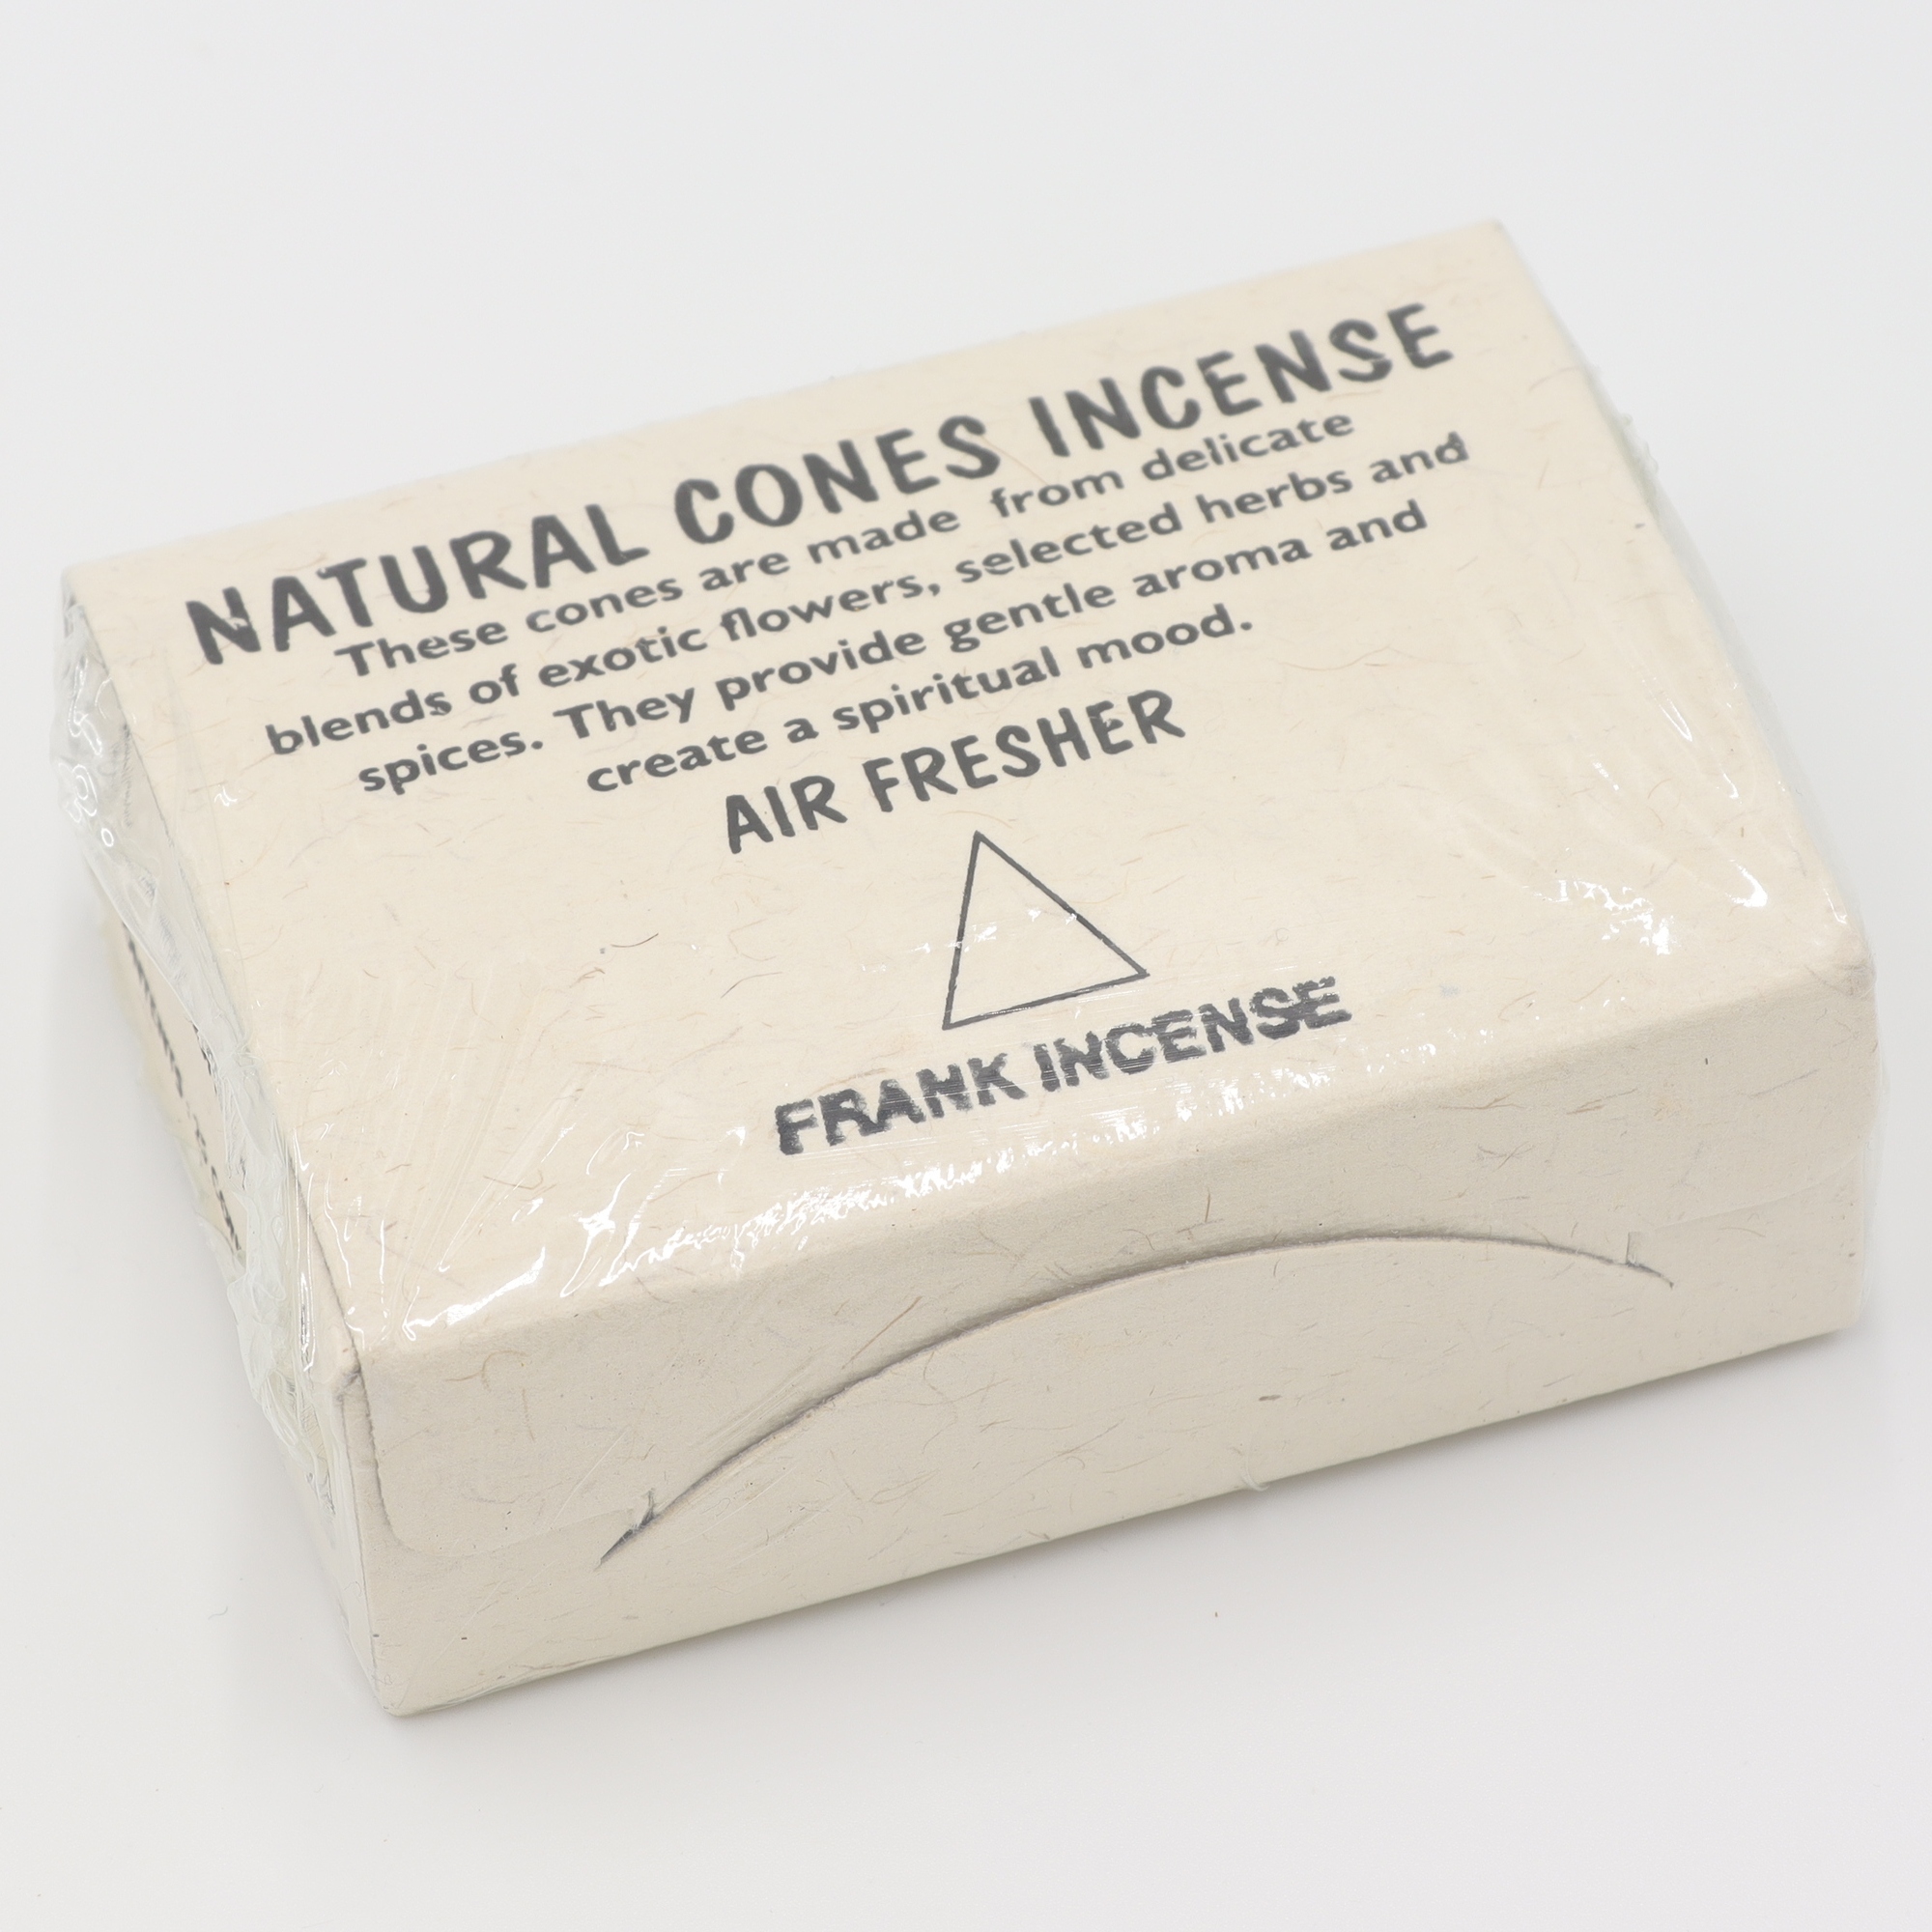 Natural Cones Incense - Frankincense - Räucherkegel aus Nepal, handgemachte Kegel aus rein natürlichen Zutaten